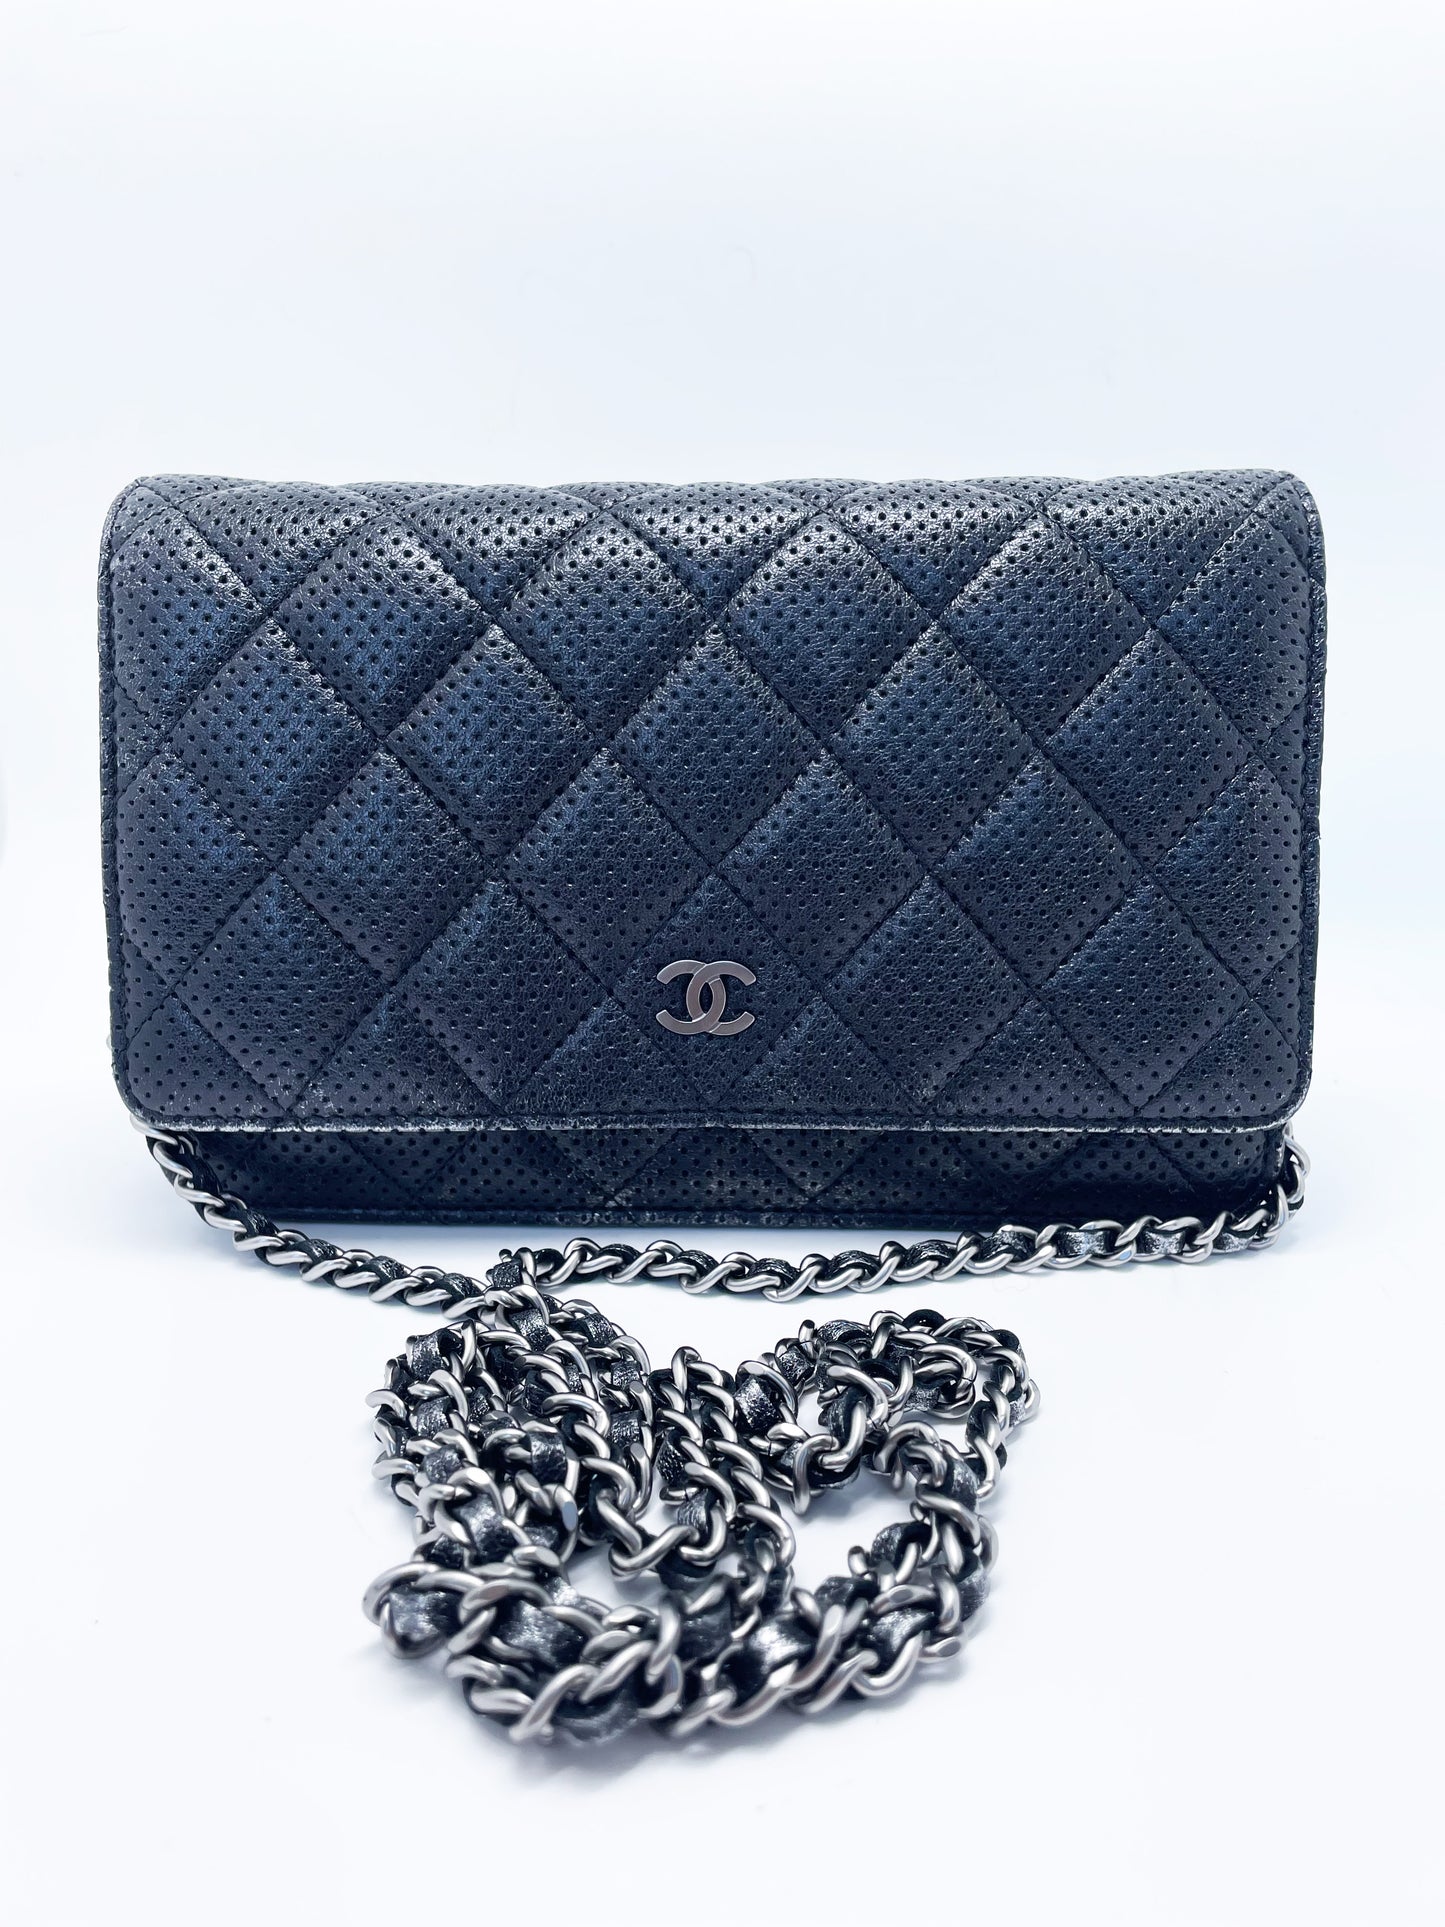 Sac Chanel bandoulière wallet on chain (woc) en cuir perforé noir et argenté